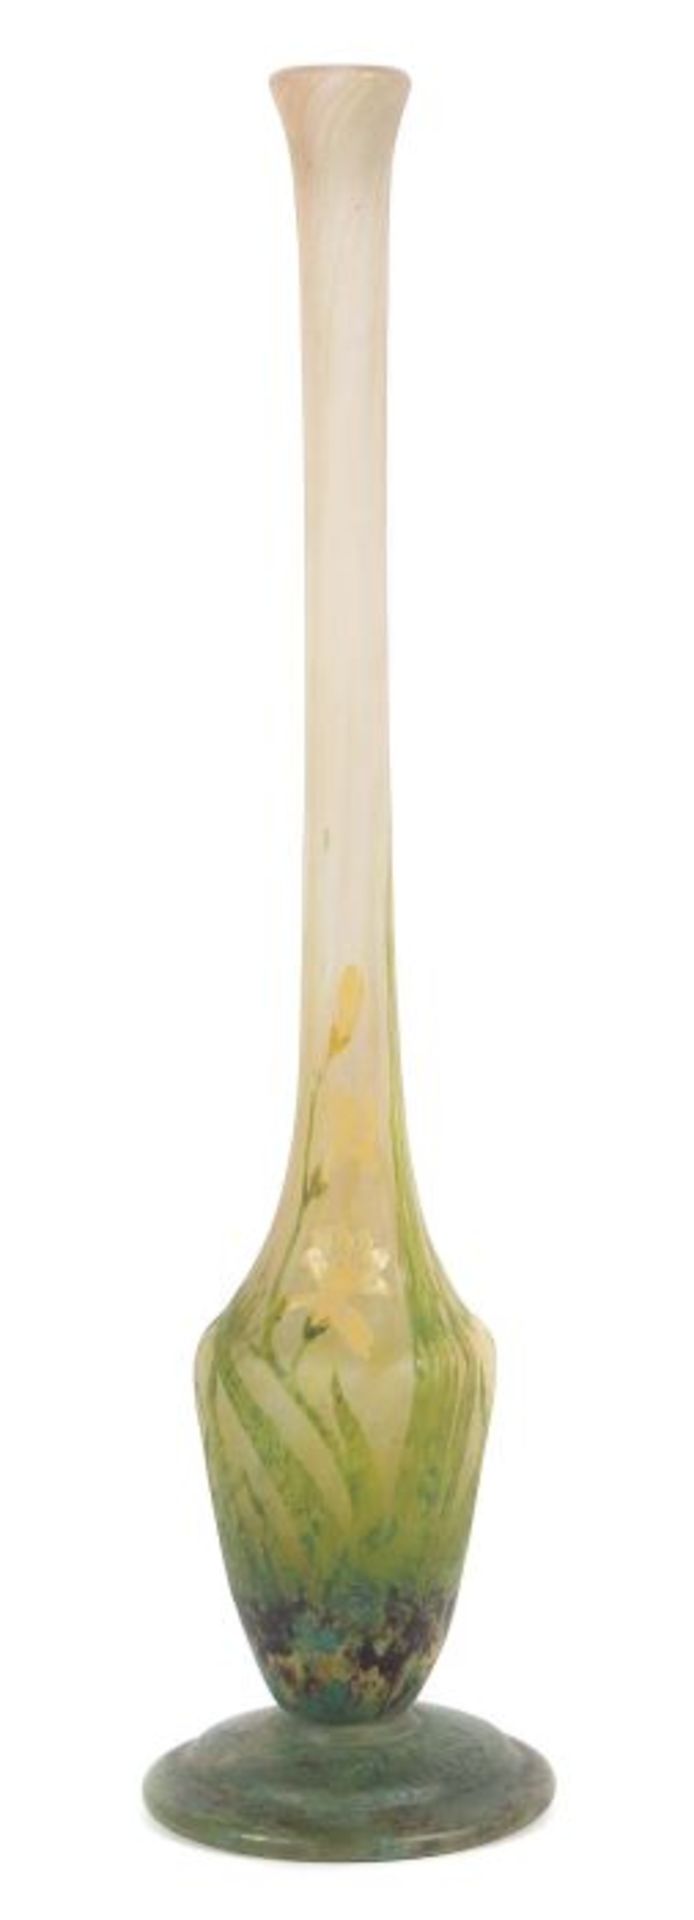 Vase "Freesias"Daum Frères & Cie, Verreries de Nancy, um 1910, farbloses Glas, mundgeblasen,